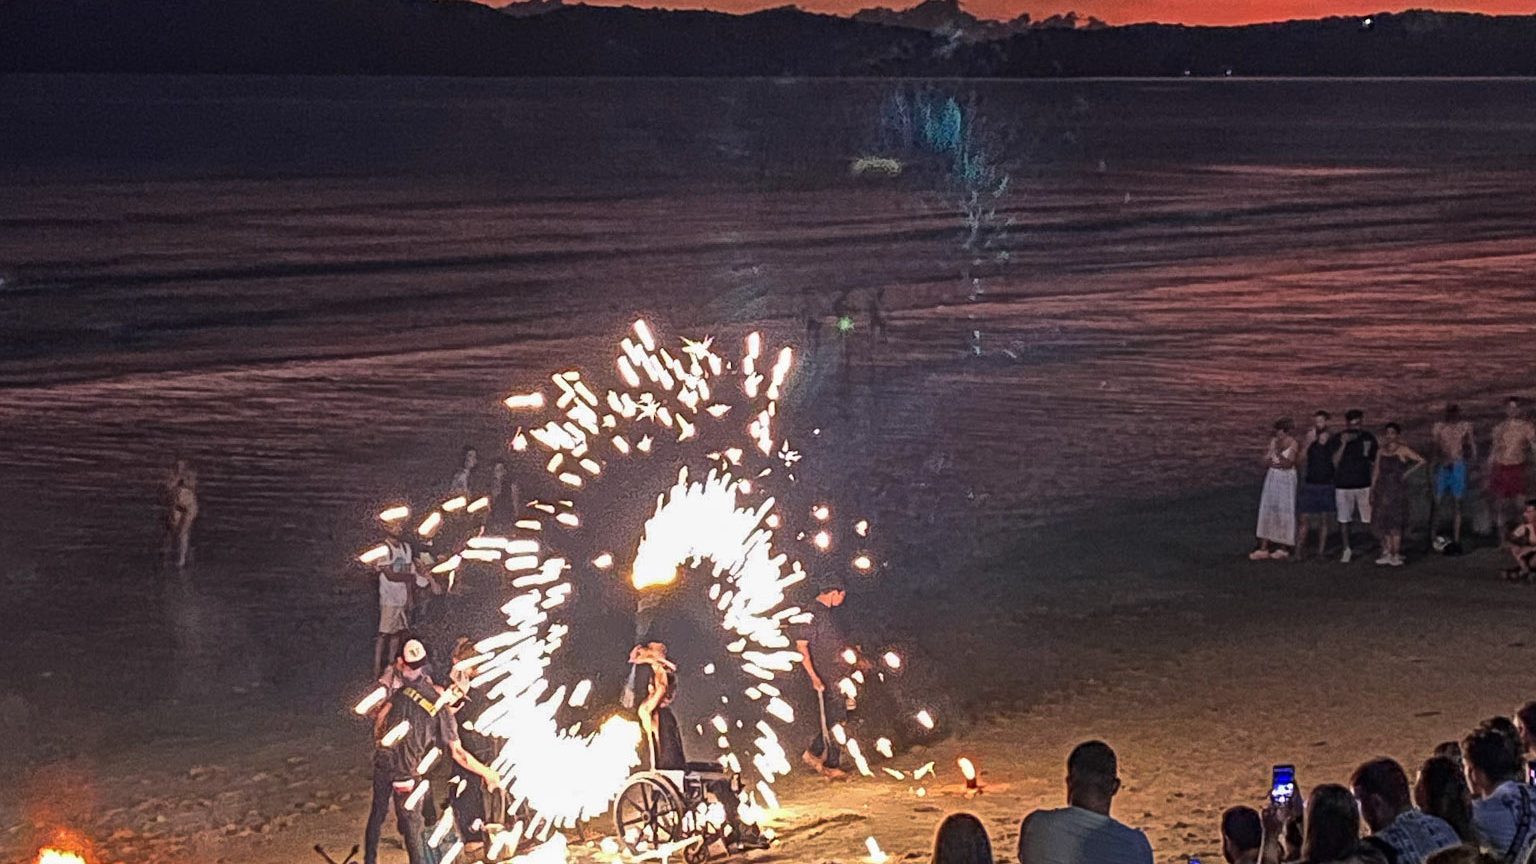 aonang beach fire show - best things to do in Aonang